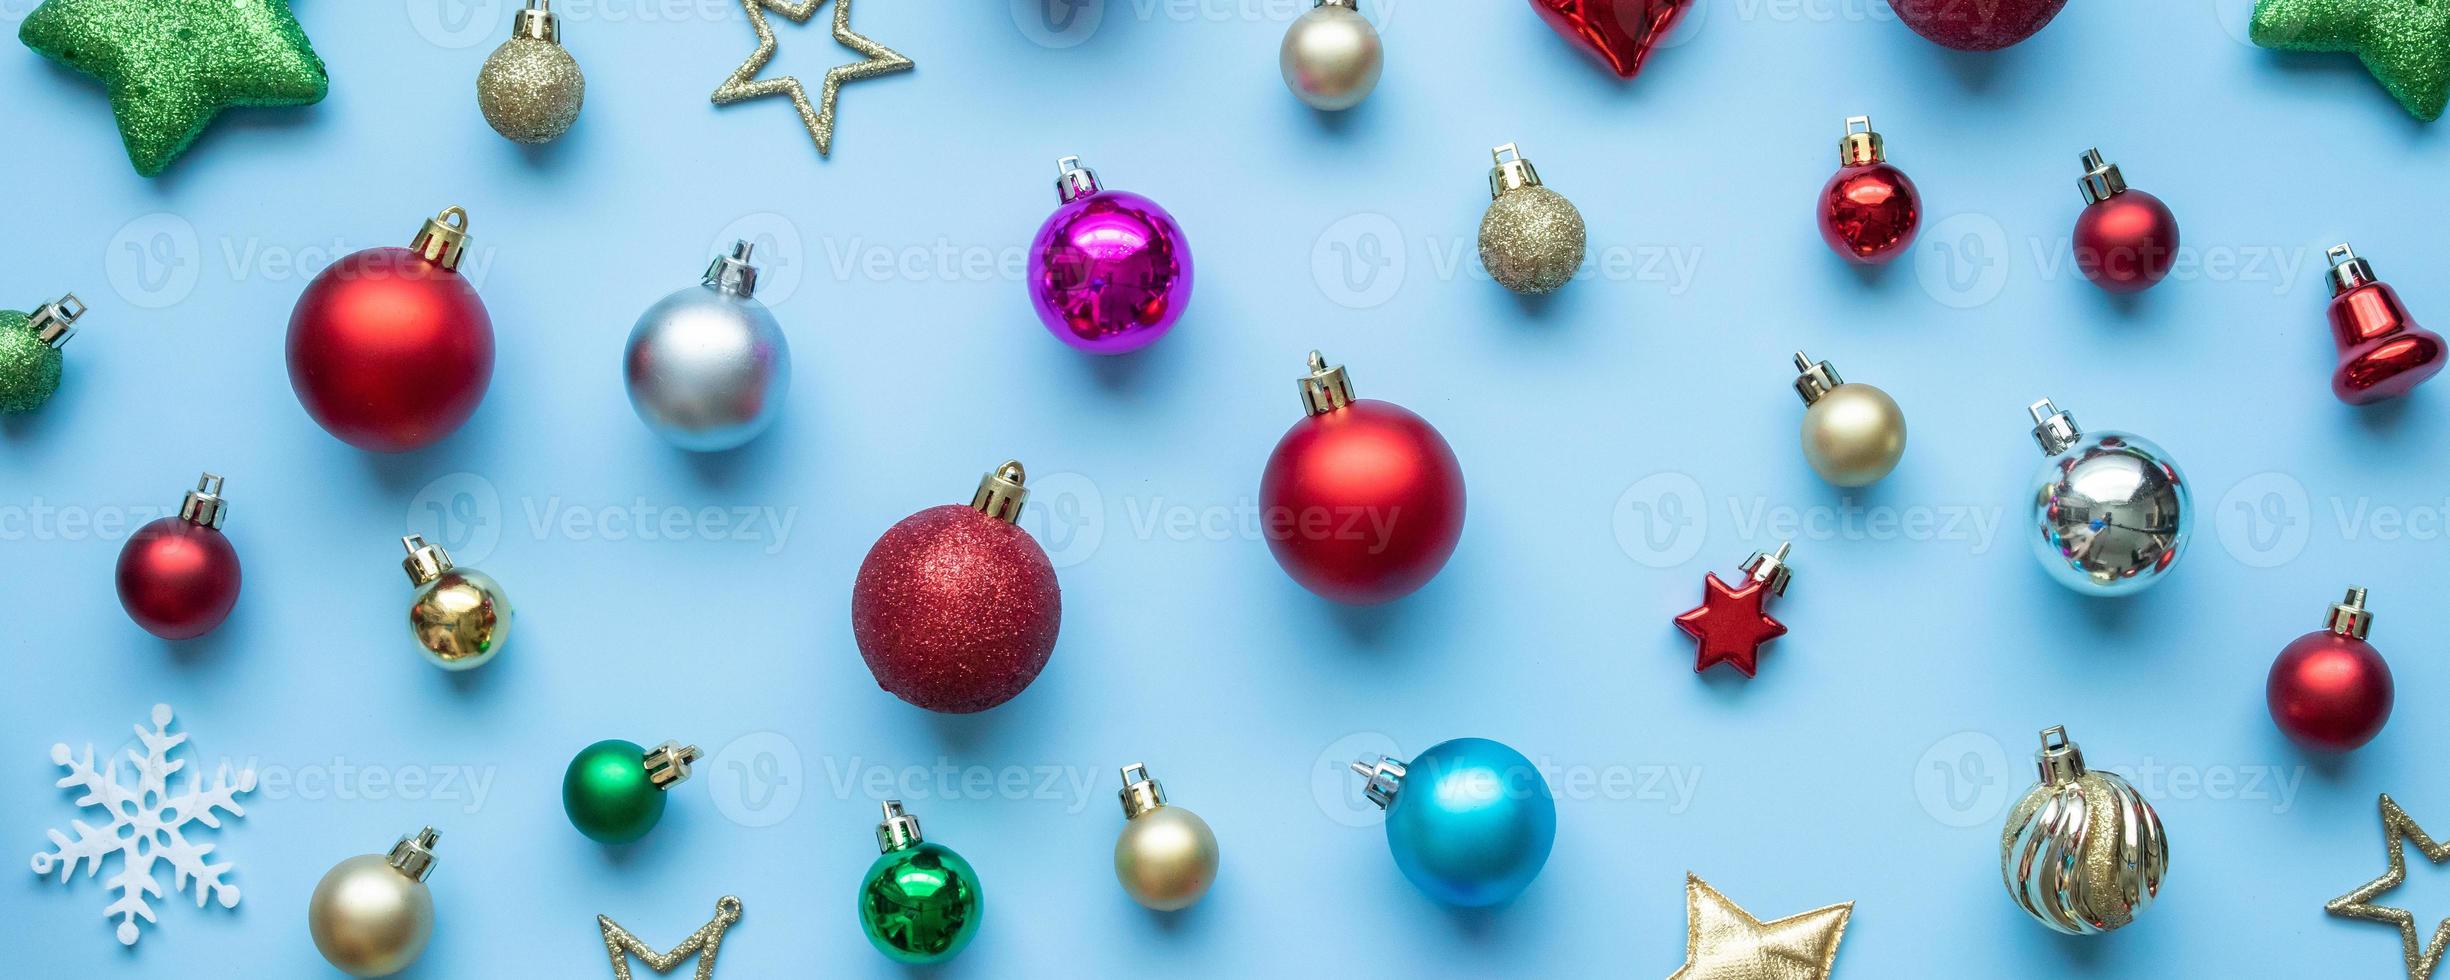 Kerstmis bal snuisterij patroon minimaal flatlay Aan blauw pastel achtergrond top visie foto